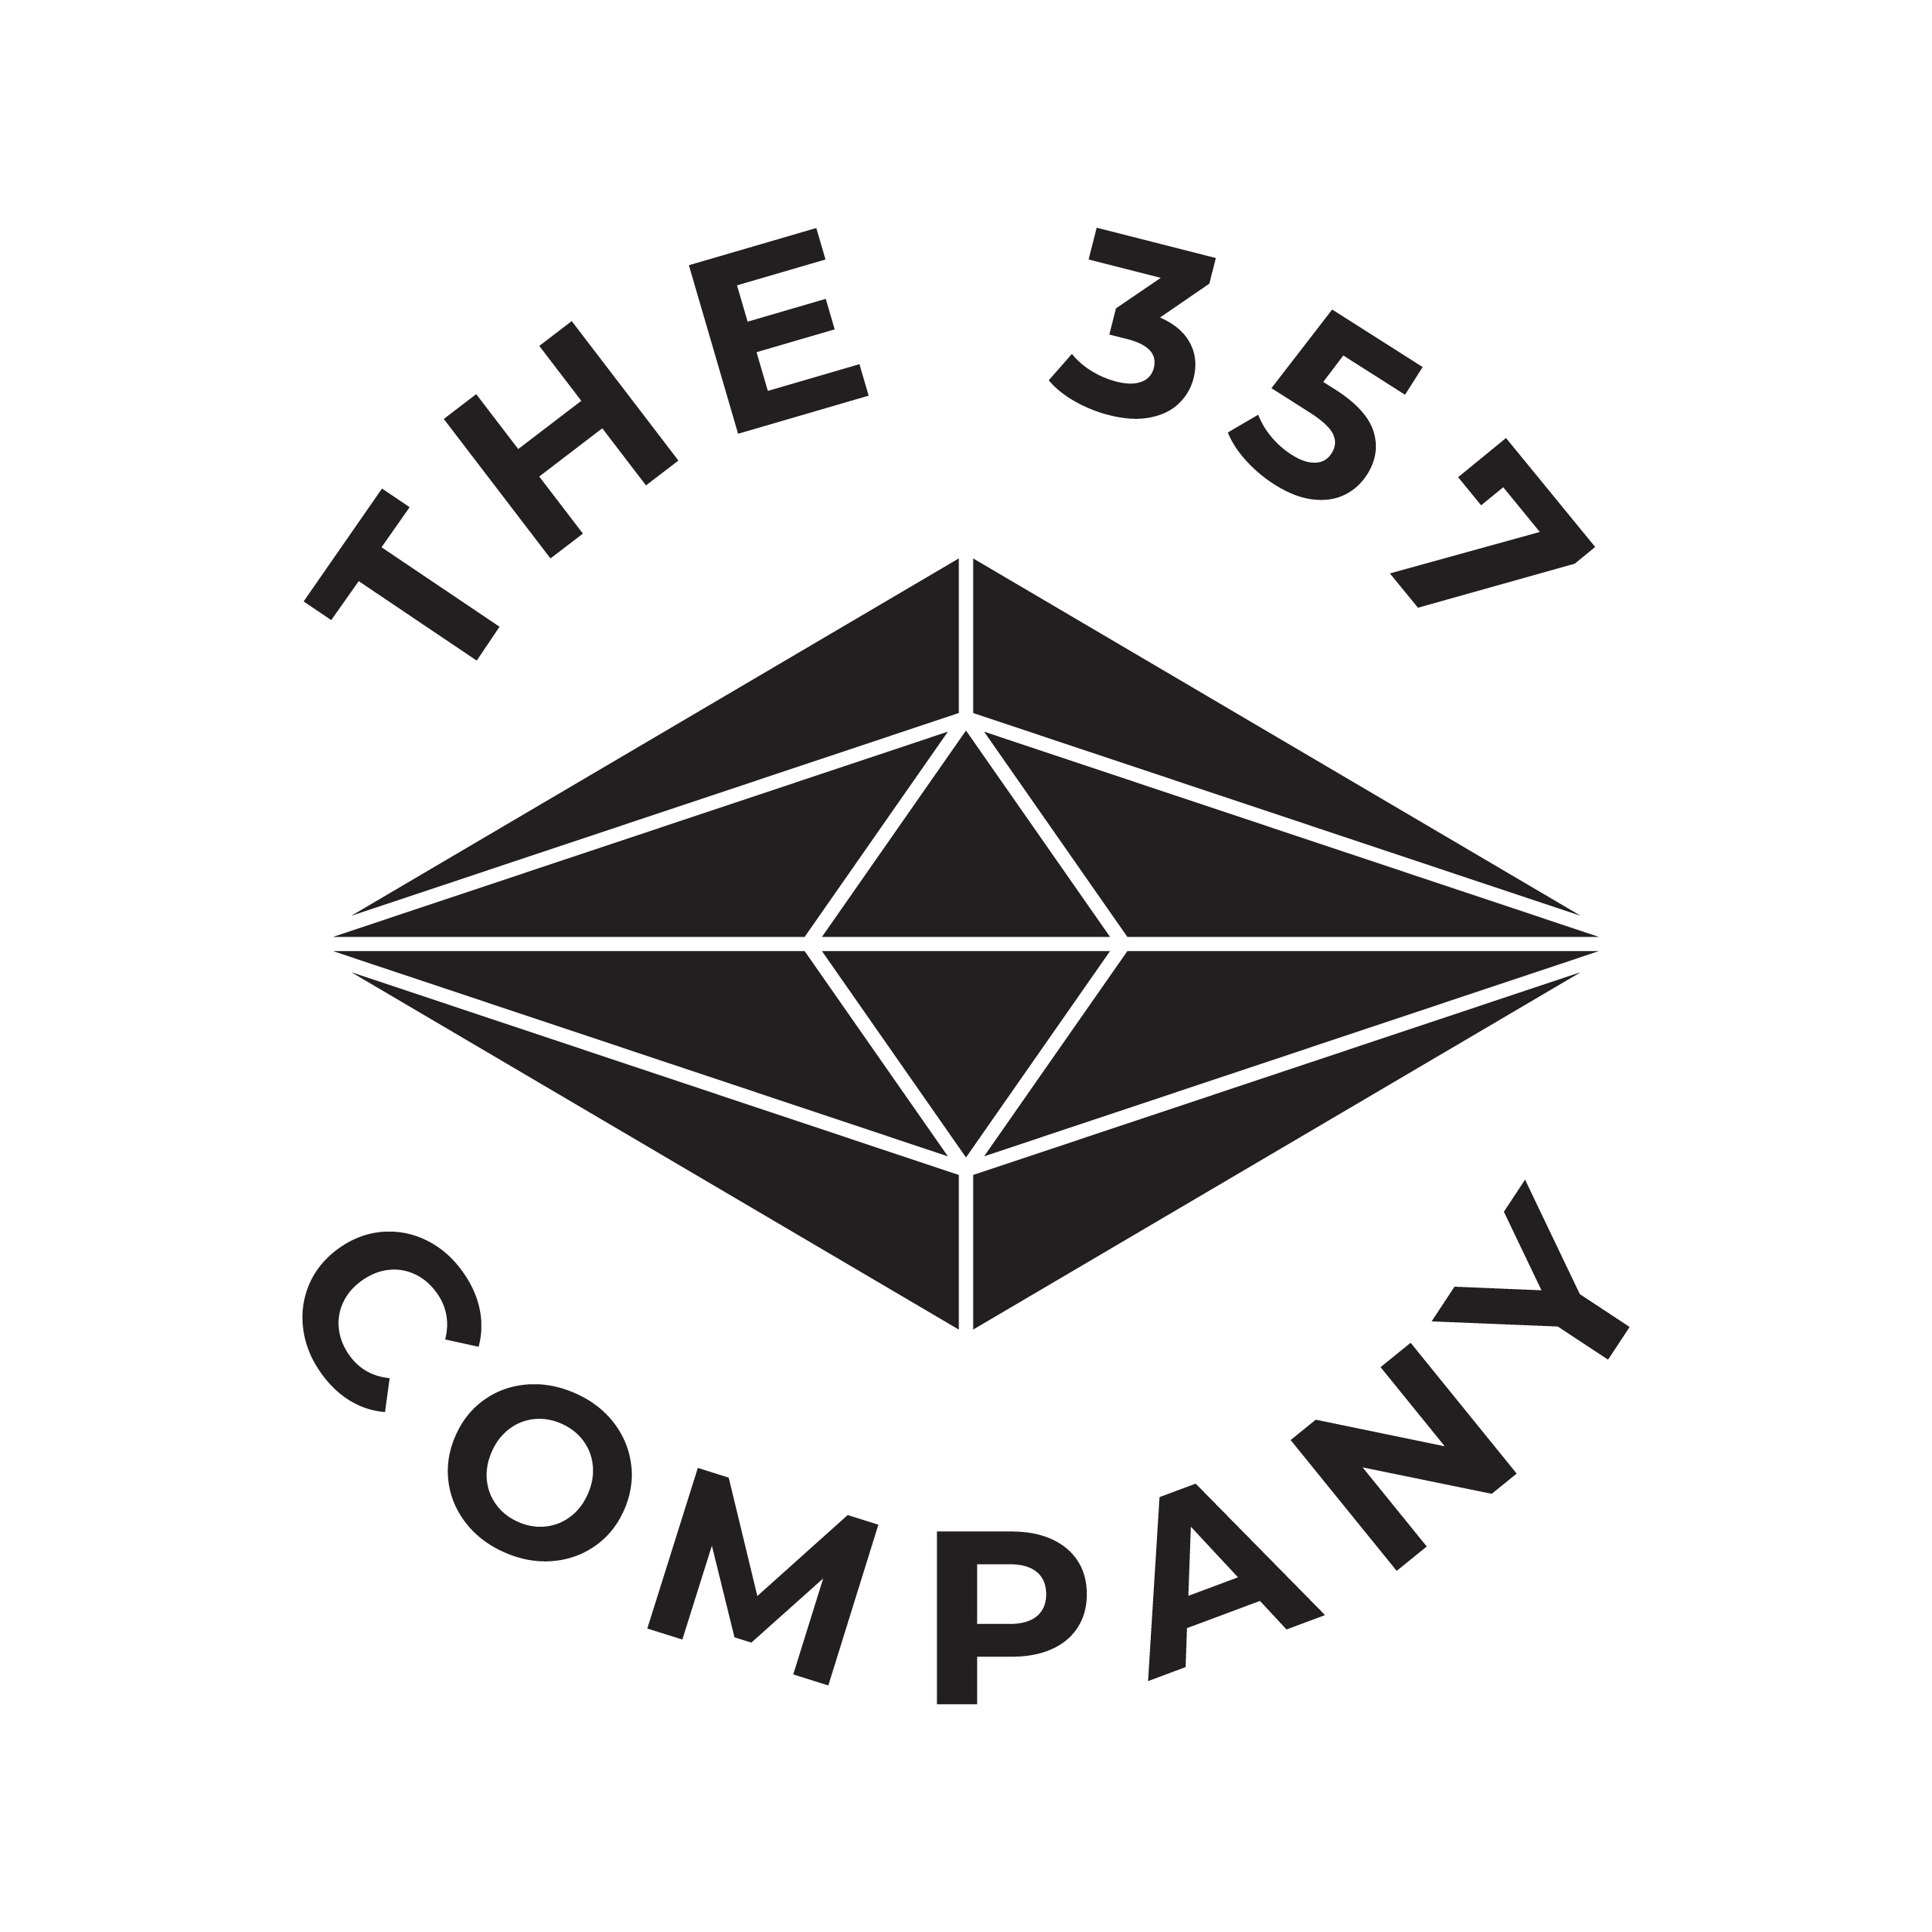 The 357 Company